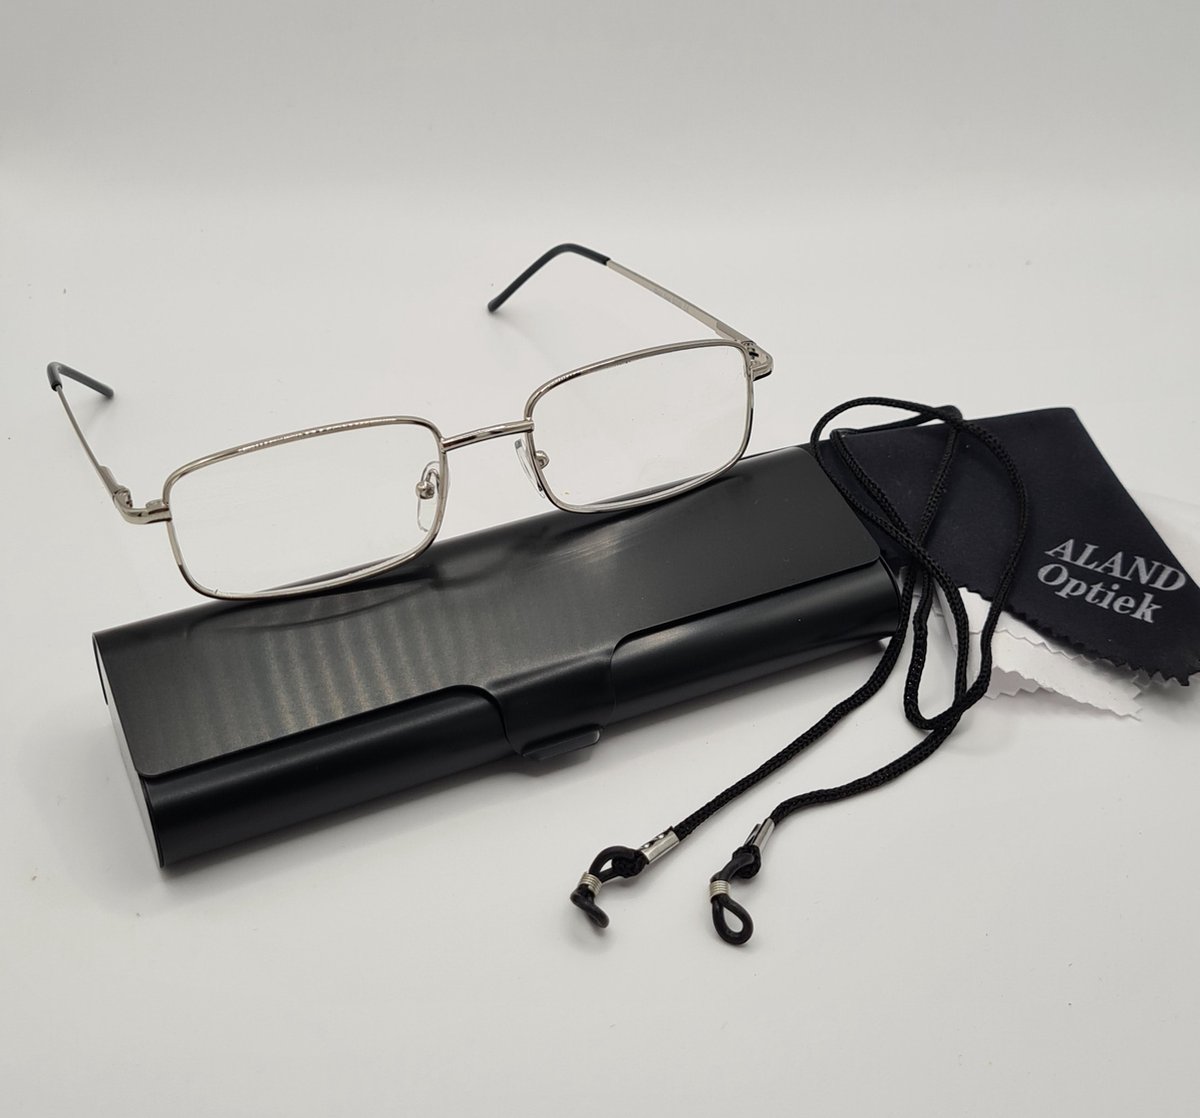 Unisex leesbril +1,5 met brillenkoker + koord + microvezeldoekje / class one 5000 / zilver / +1.5 lunettes de lecture avec étui pratique, cordon et chiffon de nettoyage pour lentilles / Aland optiek